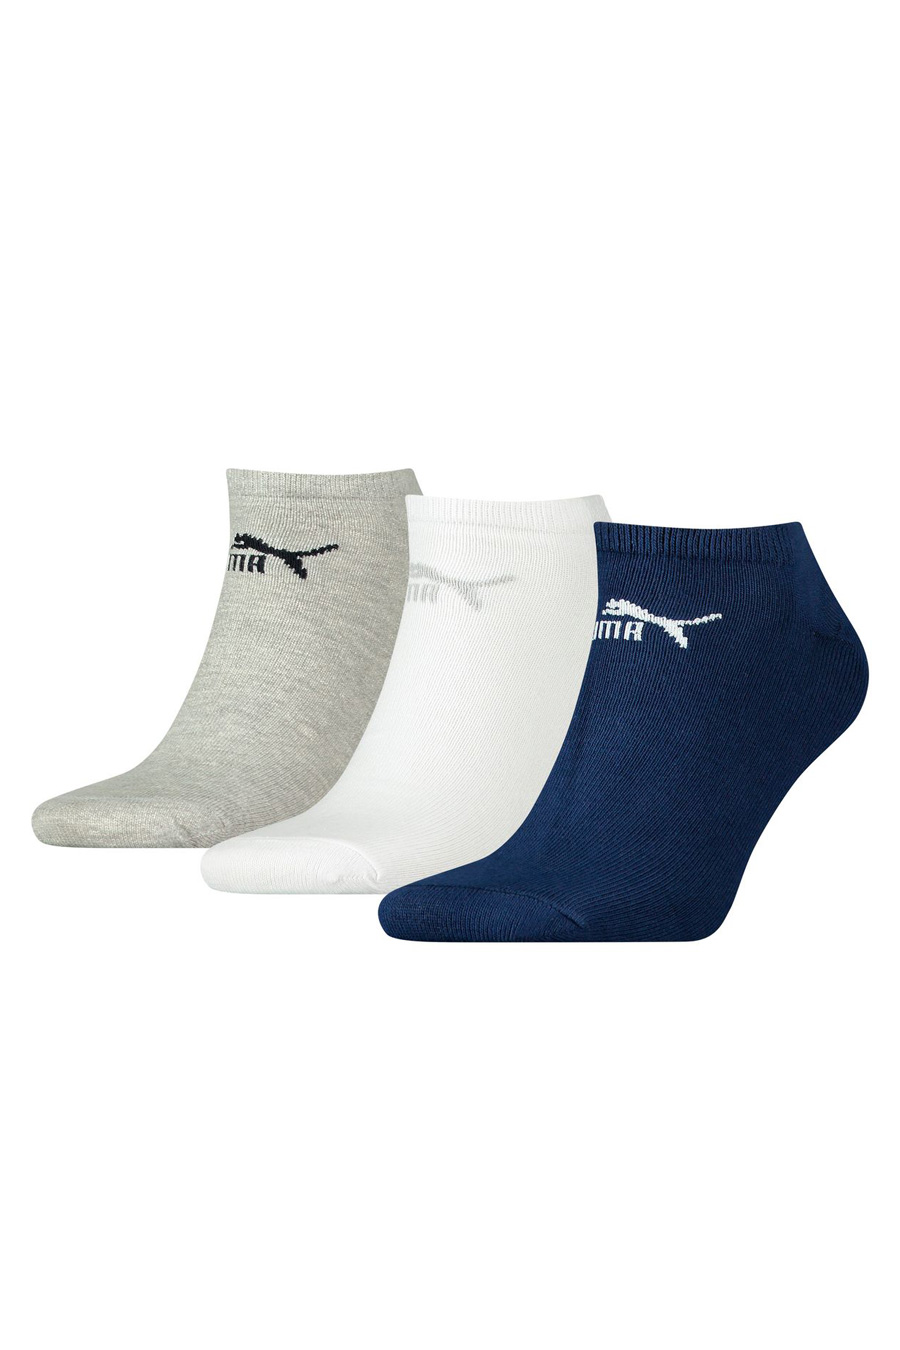 Socks PUMA 201103001-321